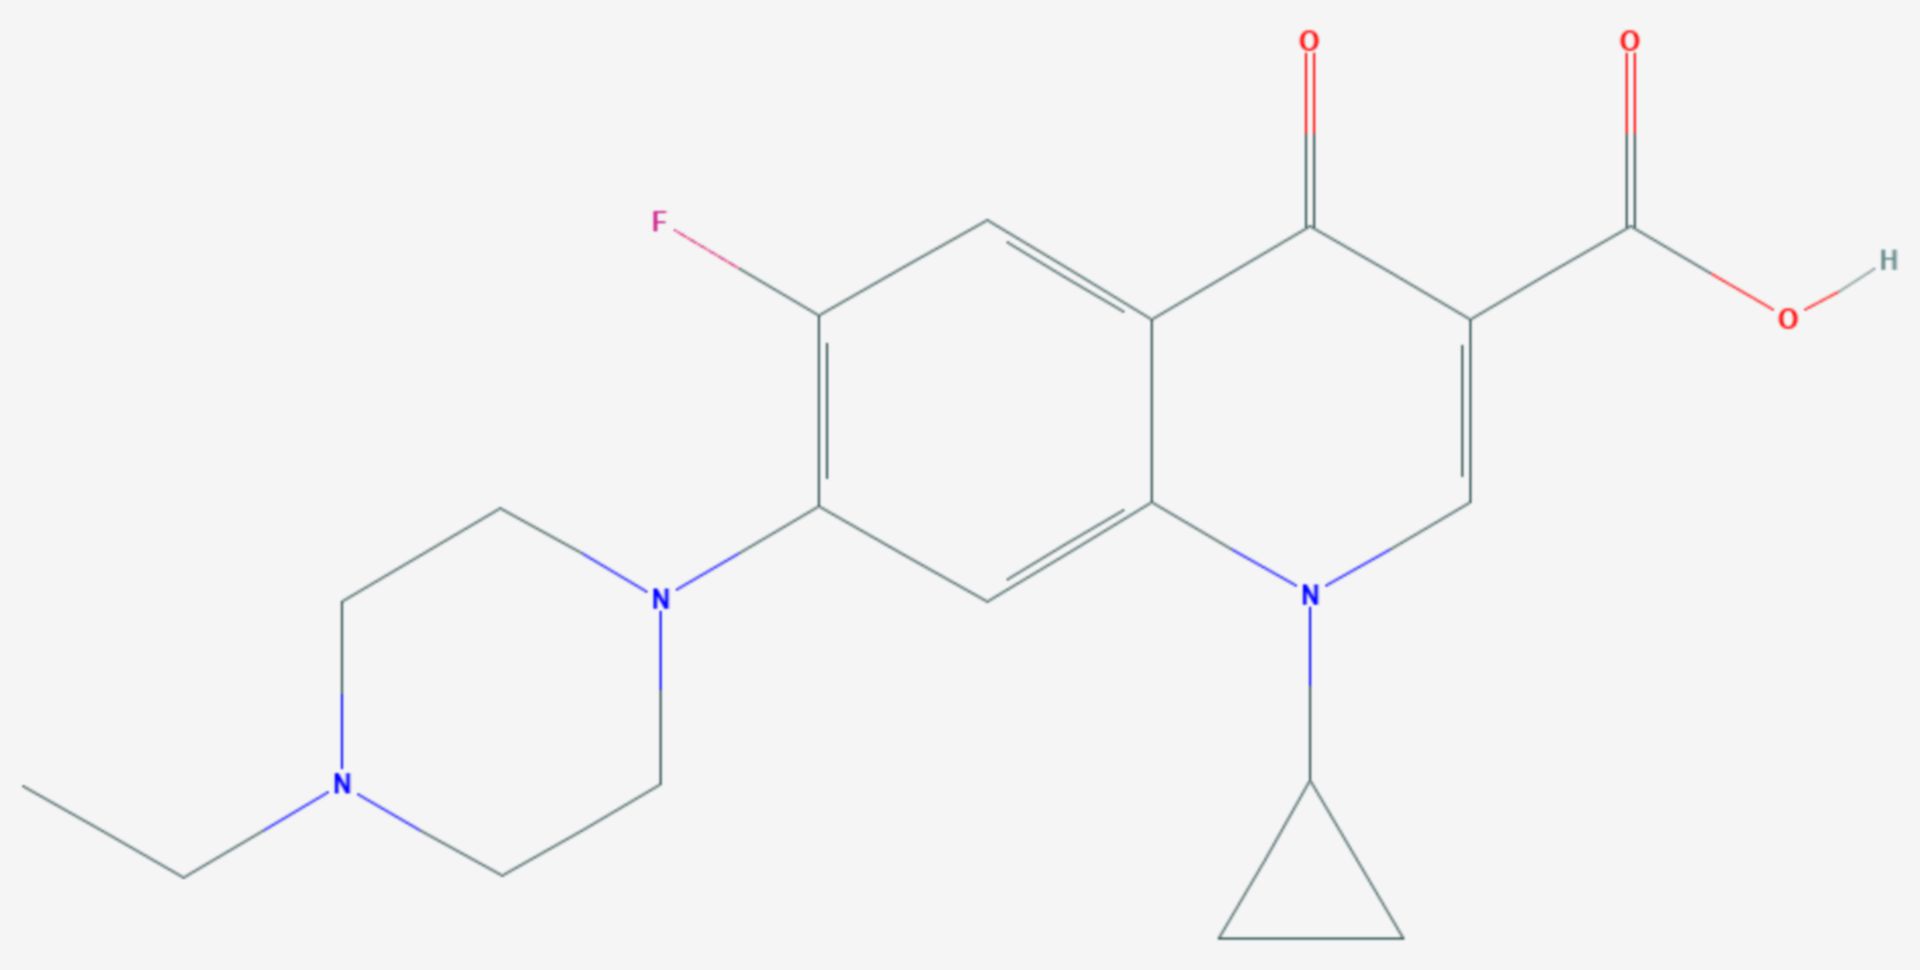 Enrofloxacin (Strukturformel)